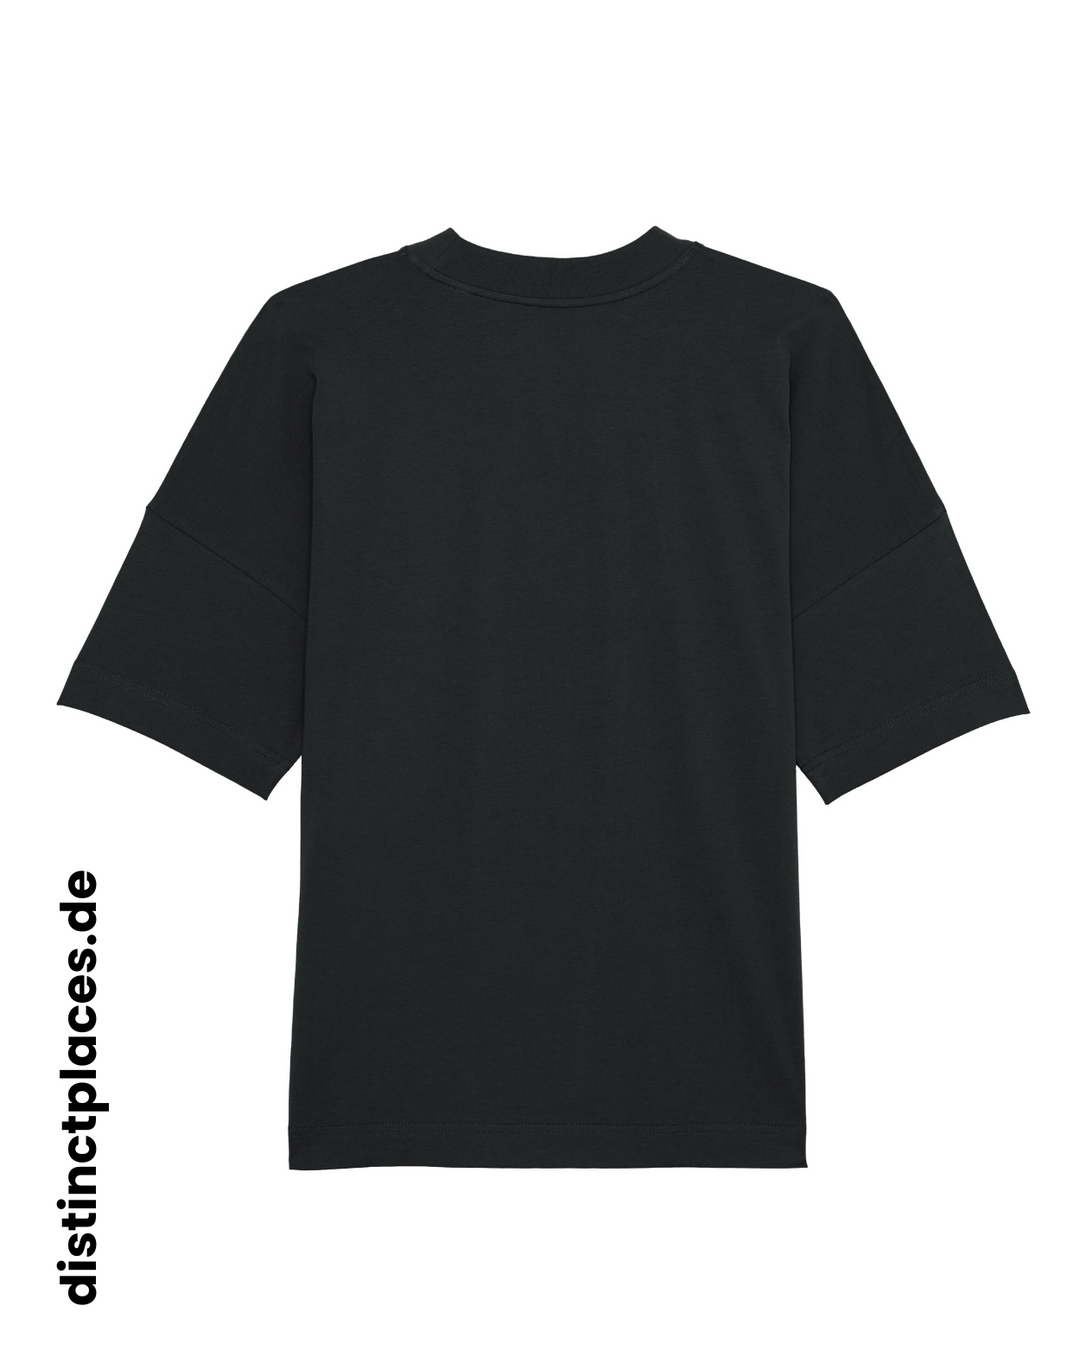 Schwarzes fairtrade, vegan und bio-baumwoll Oversized T-Shirt von hinten mit einem minimalistischem weißen Logo, beziehungsweise Schriftzug für Stuttgart